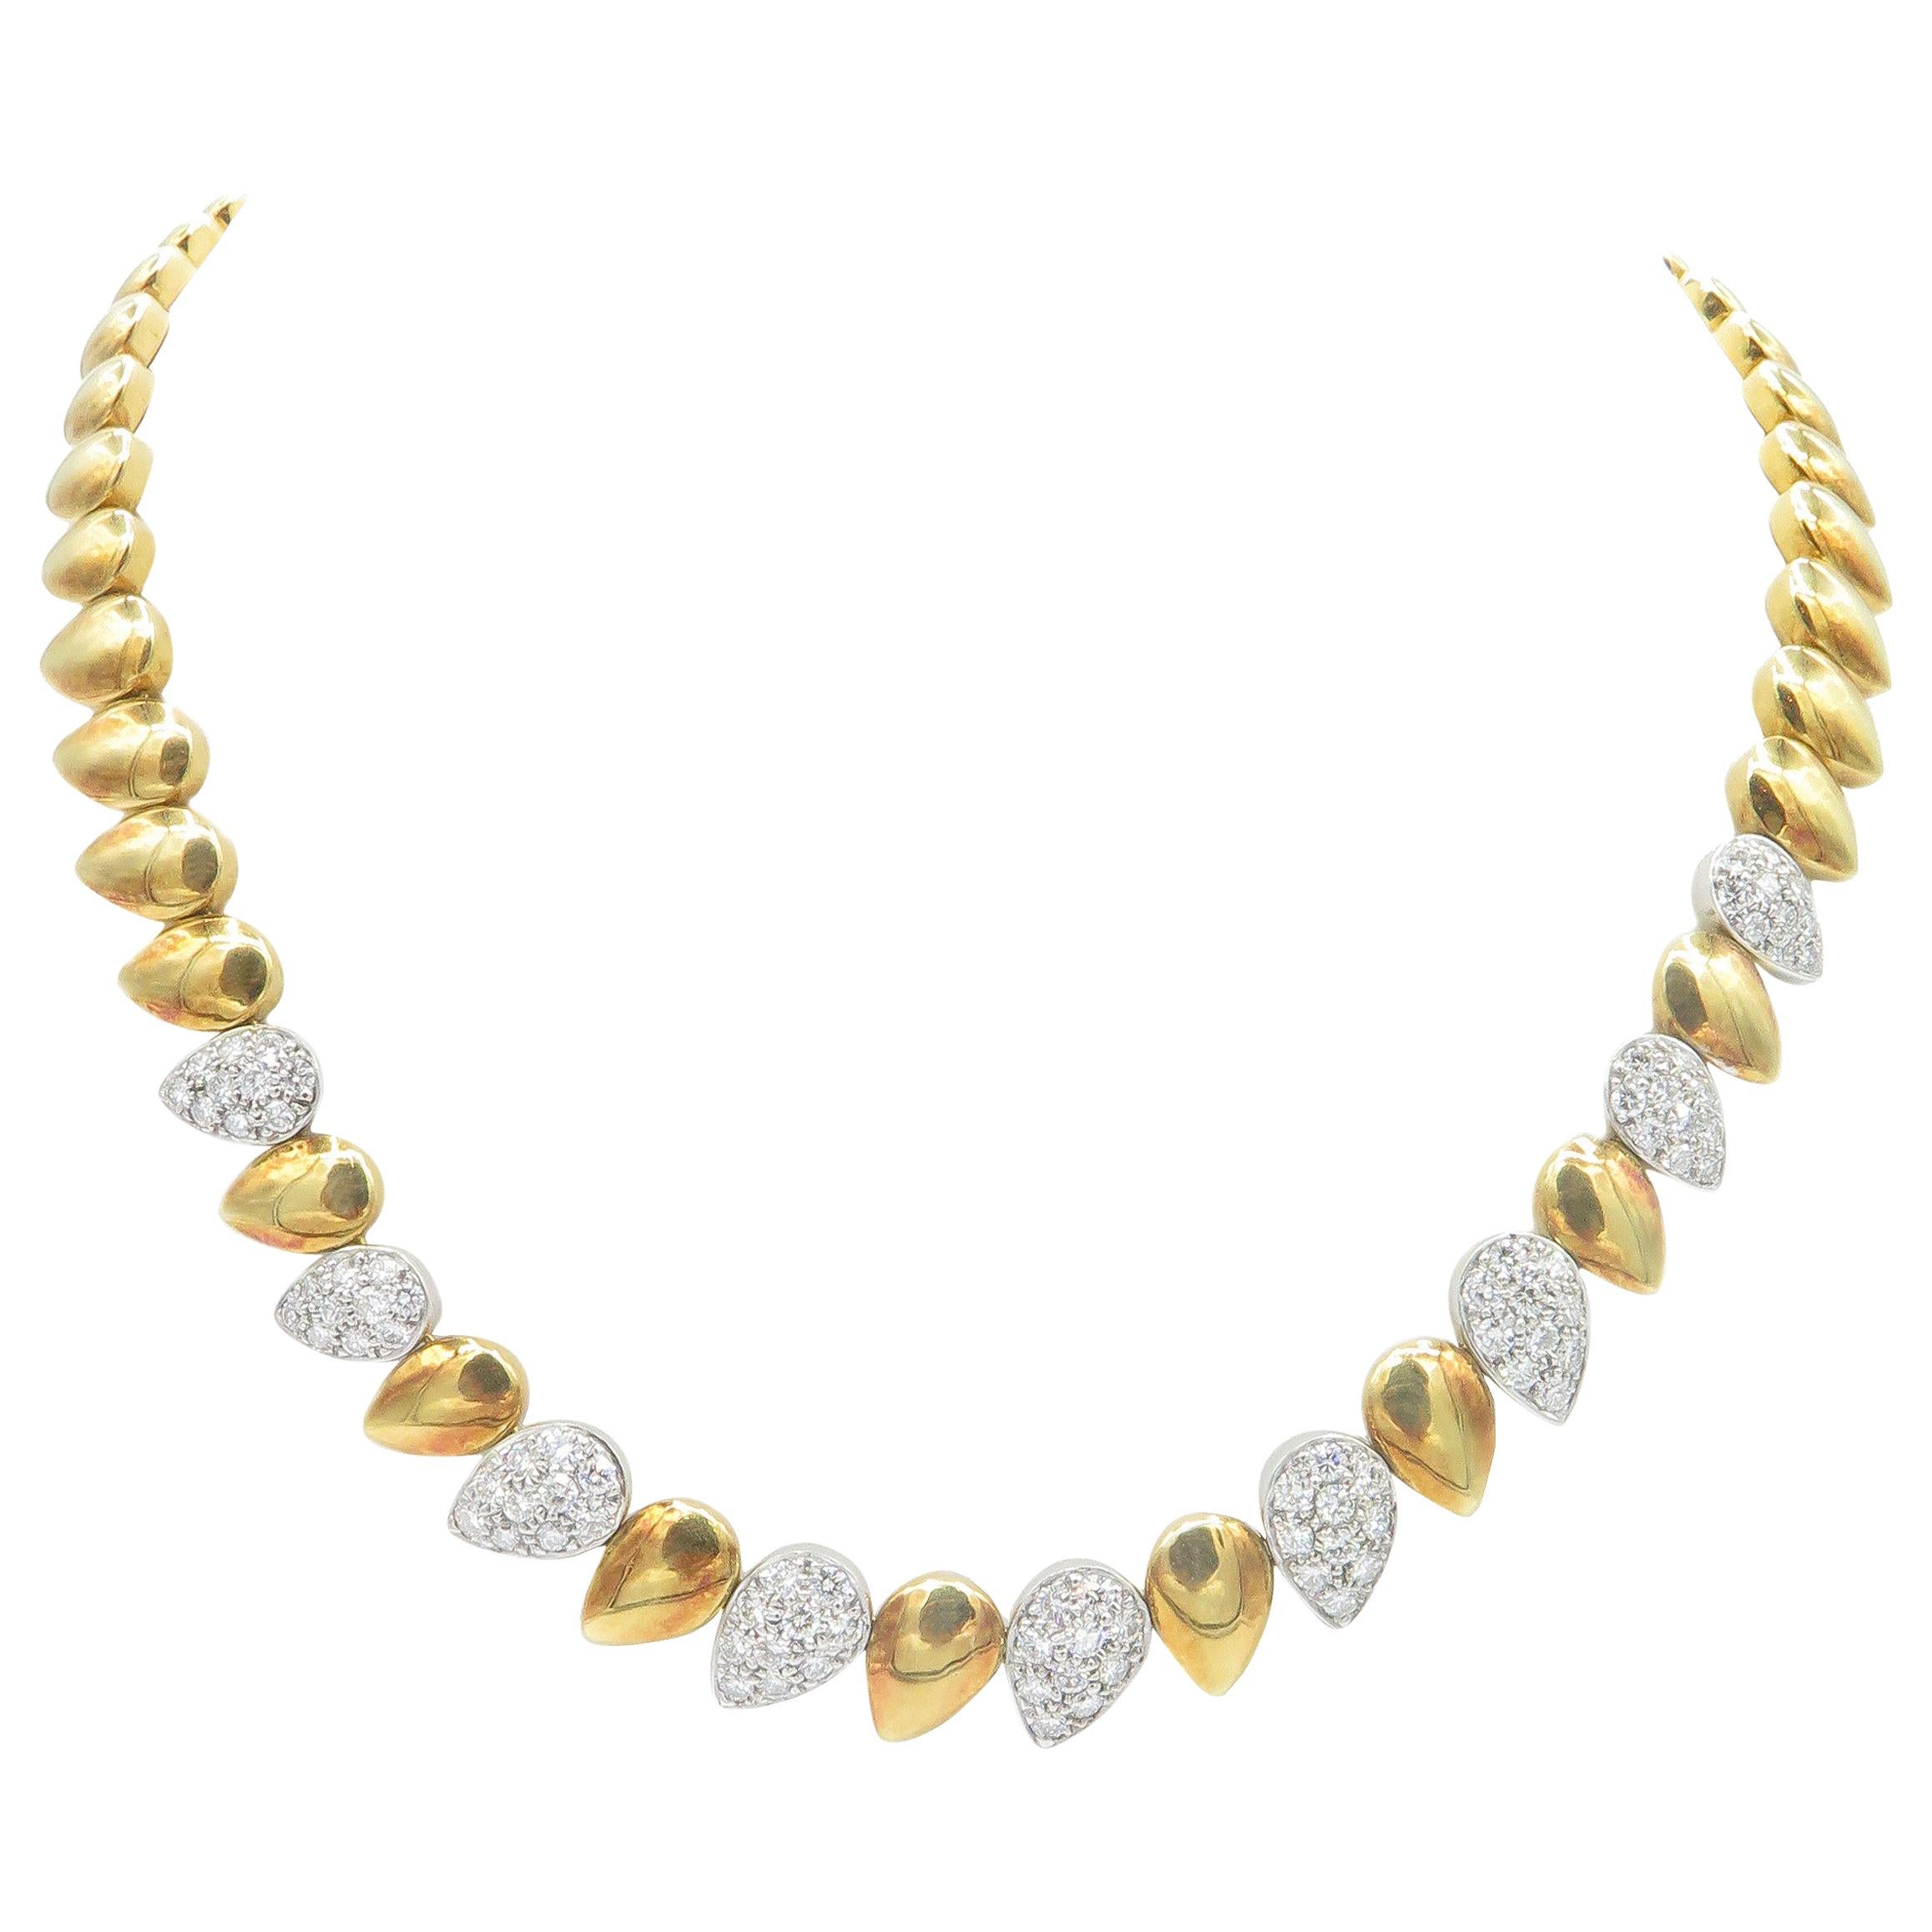 18 Karat Yellow and White Gold Diamond Necklace Choker